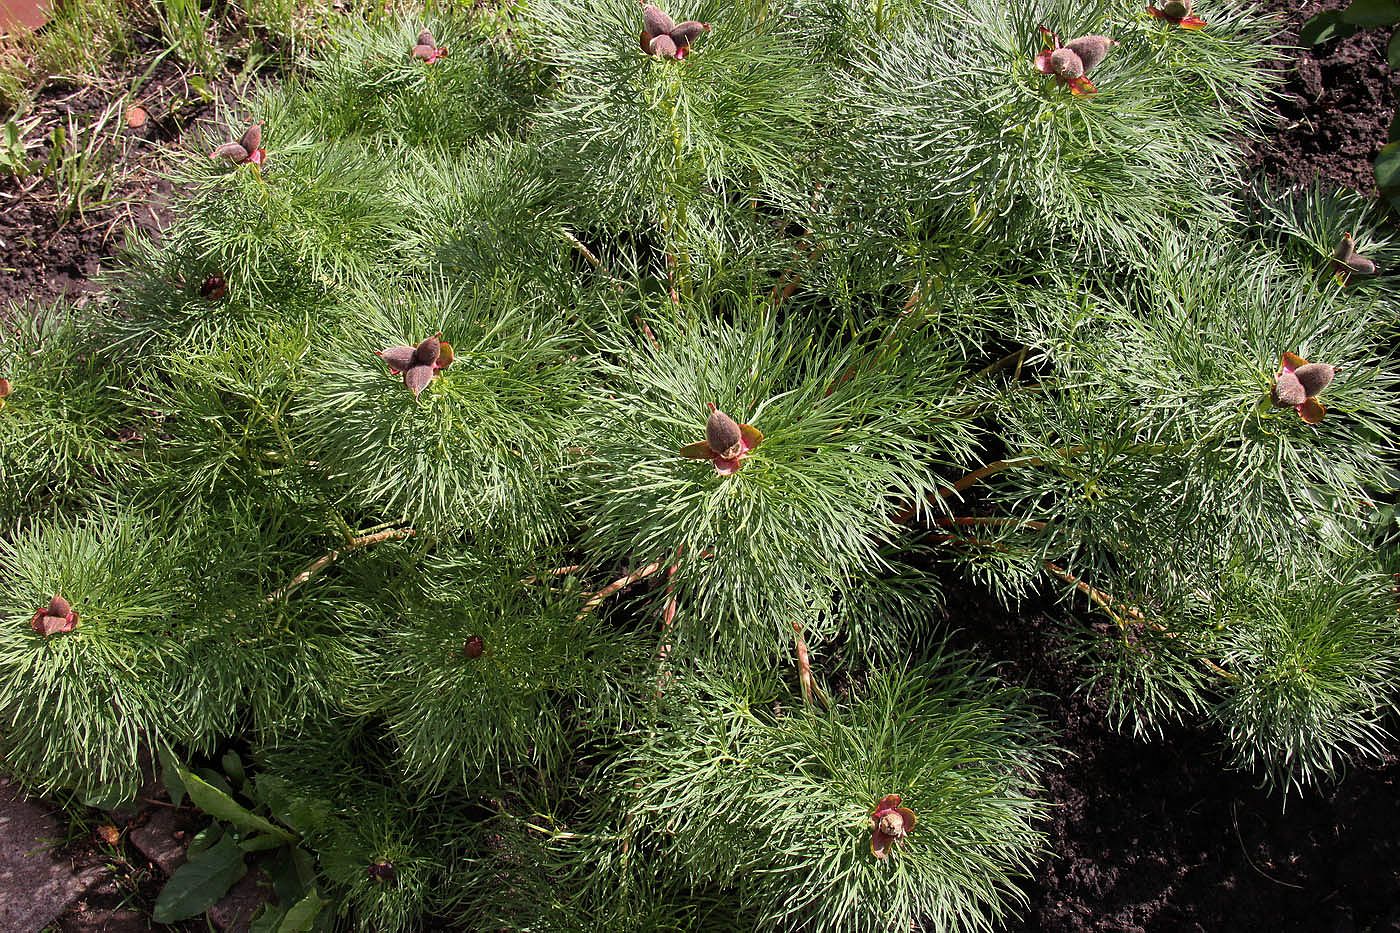 Image of Paeonia tenuifolia specimen.